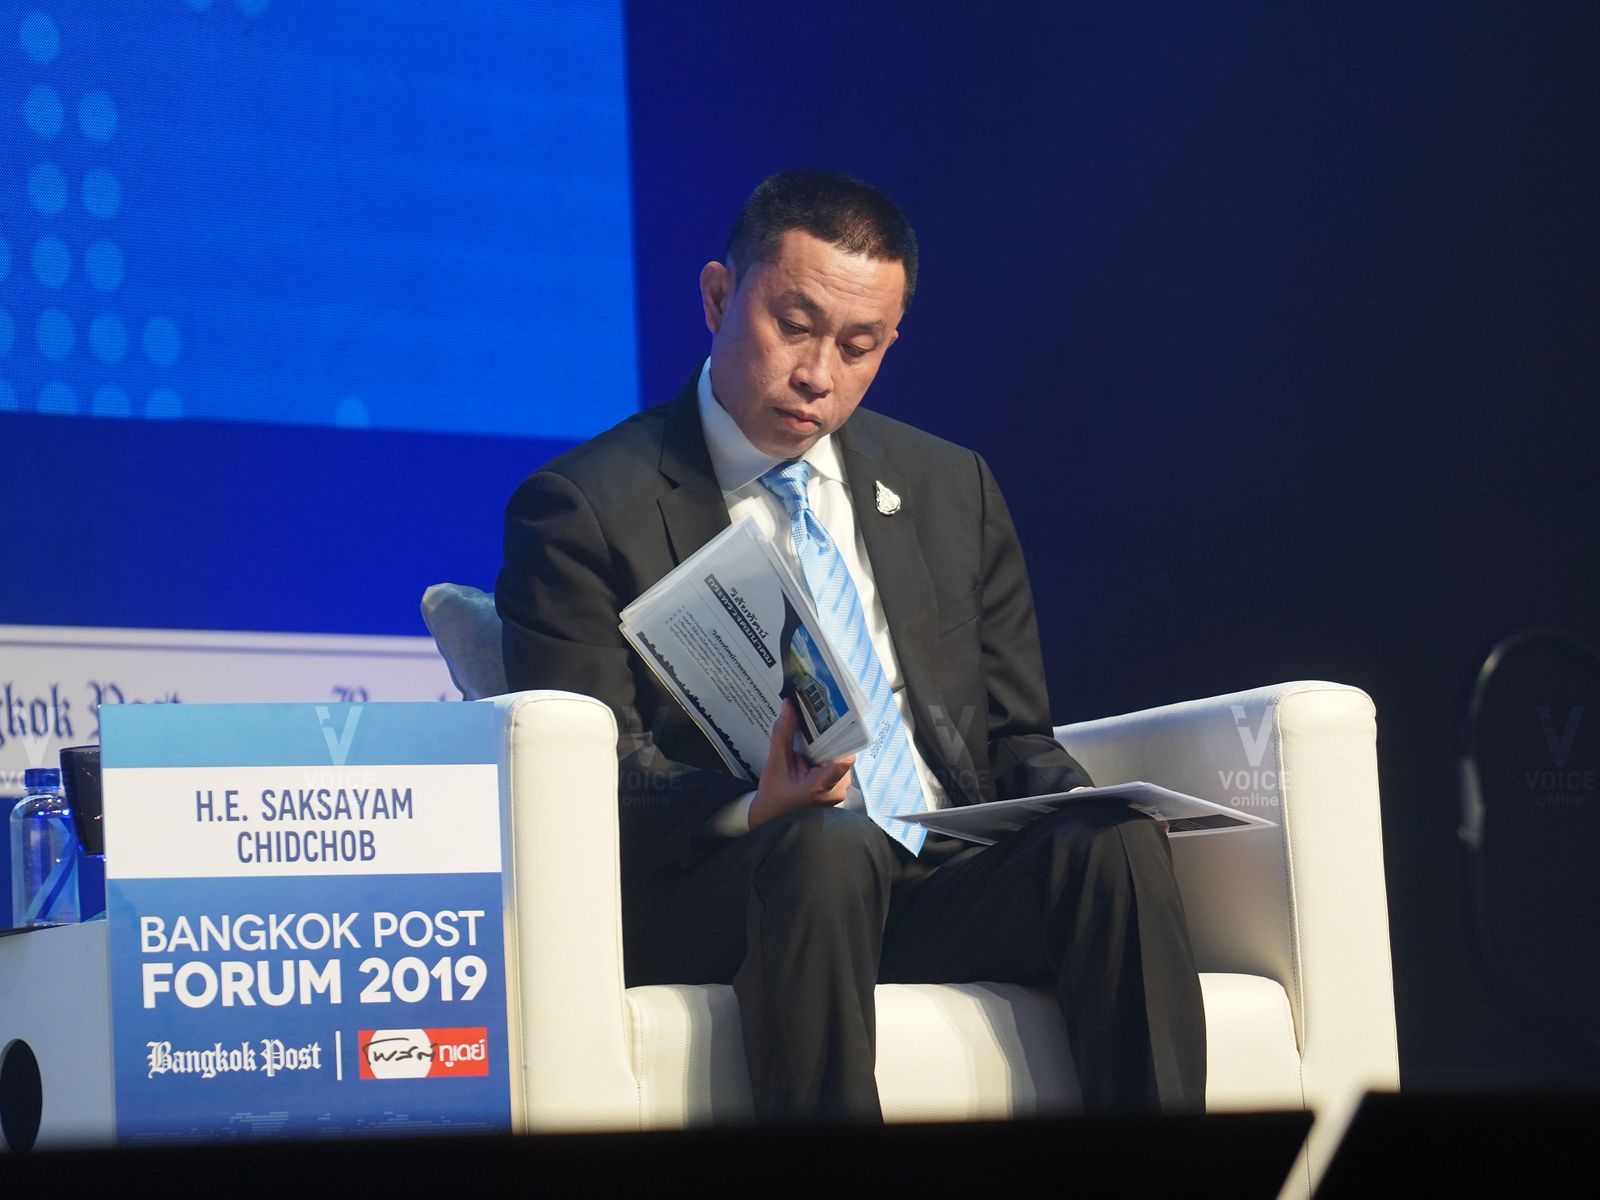 ศักดิ์สยาม ชิดชอบ-งาน Bangkok Post Forum 2019